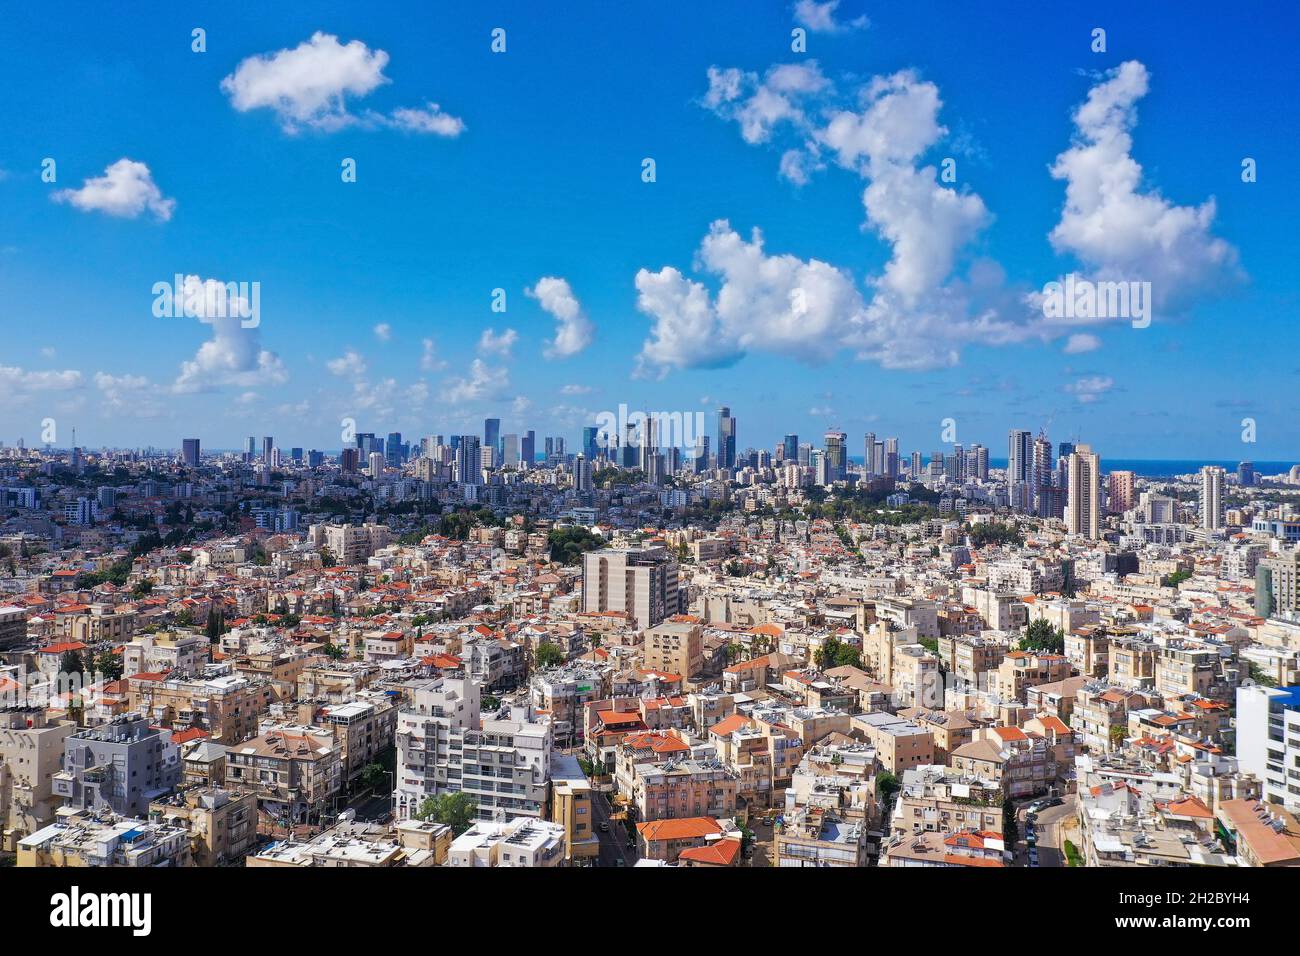 Tel Aviv skyline over neighboring Bnei Brak lower houses, Aerial view. Stock Photo